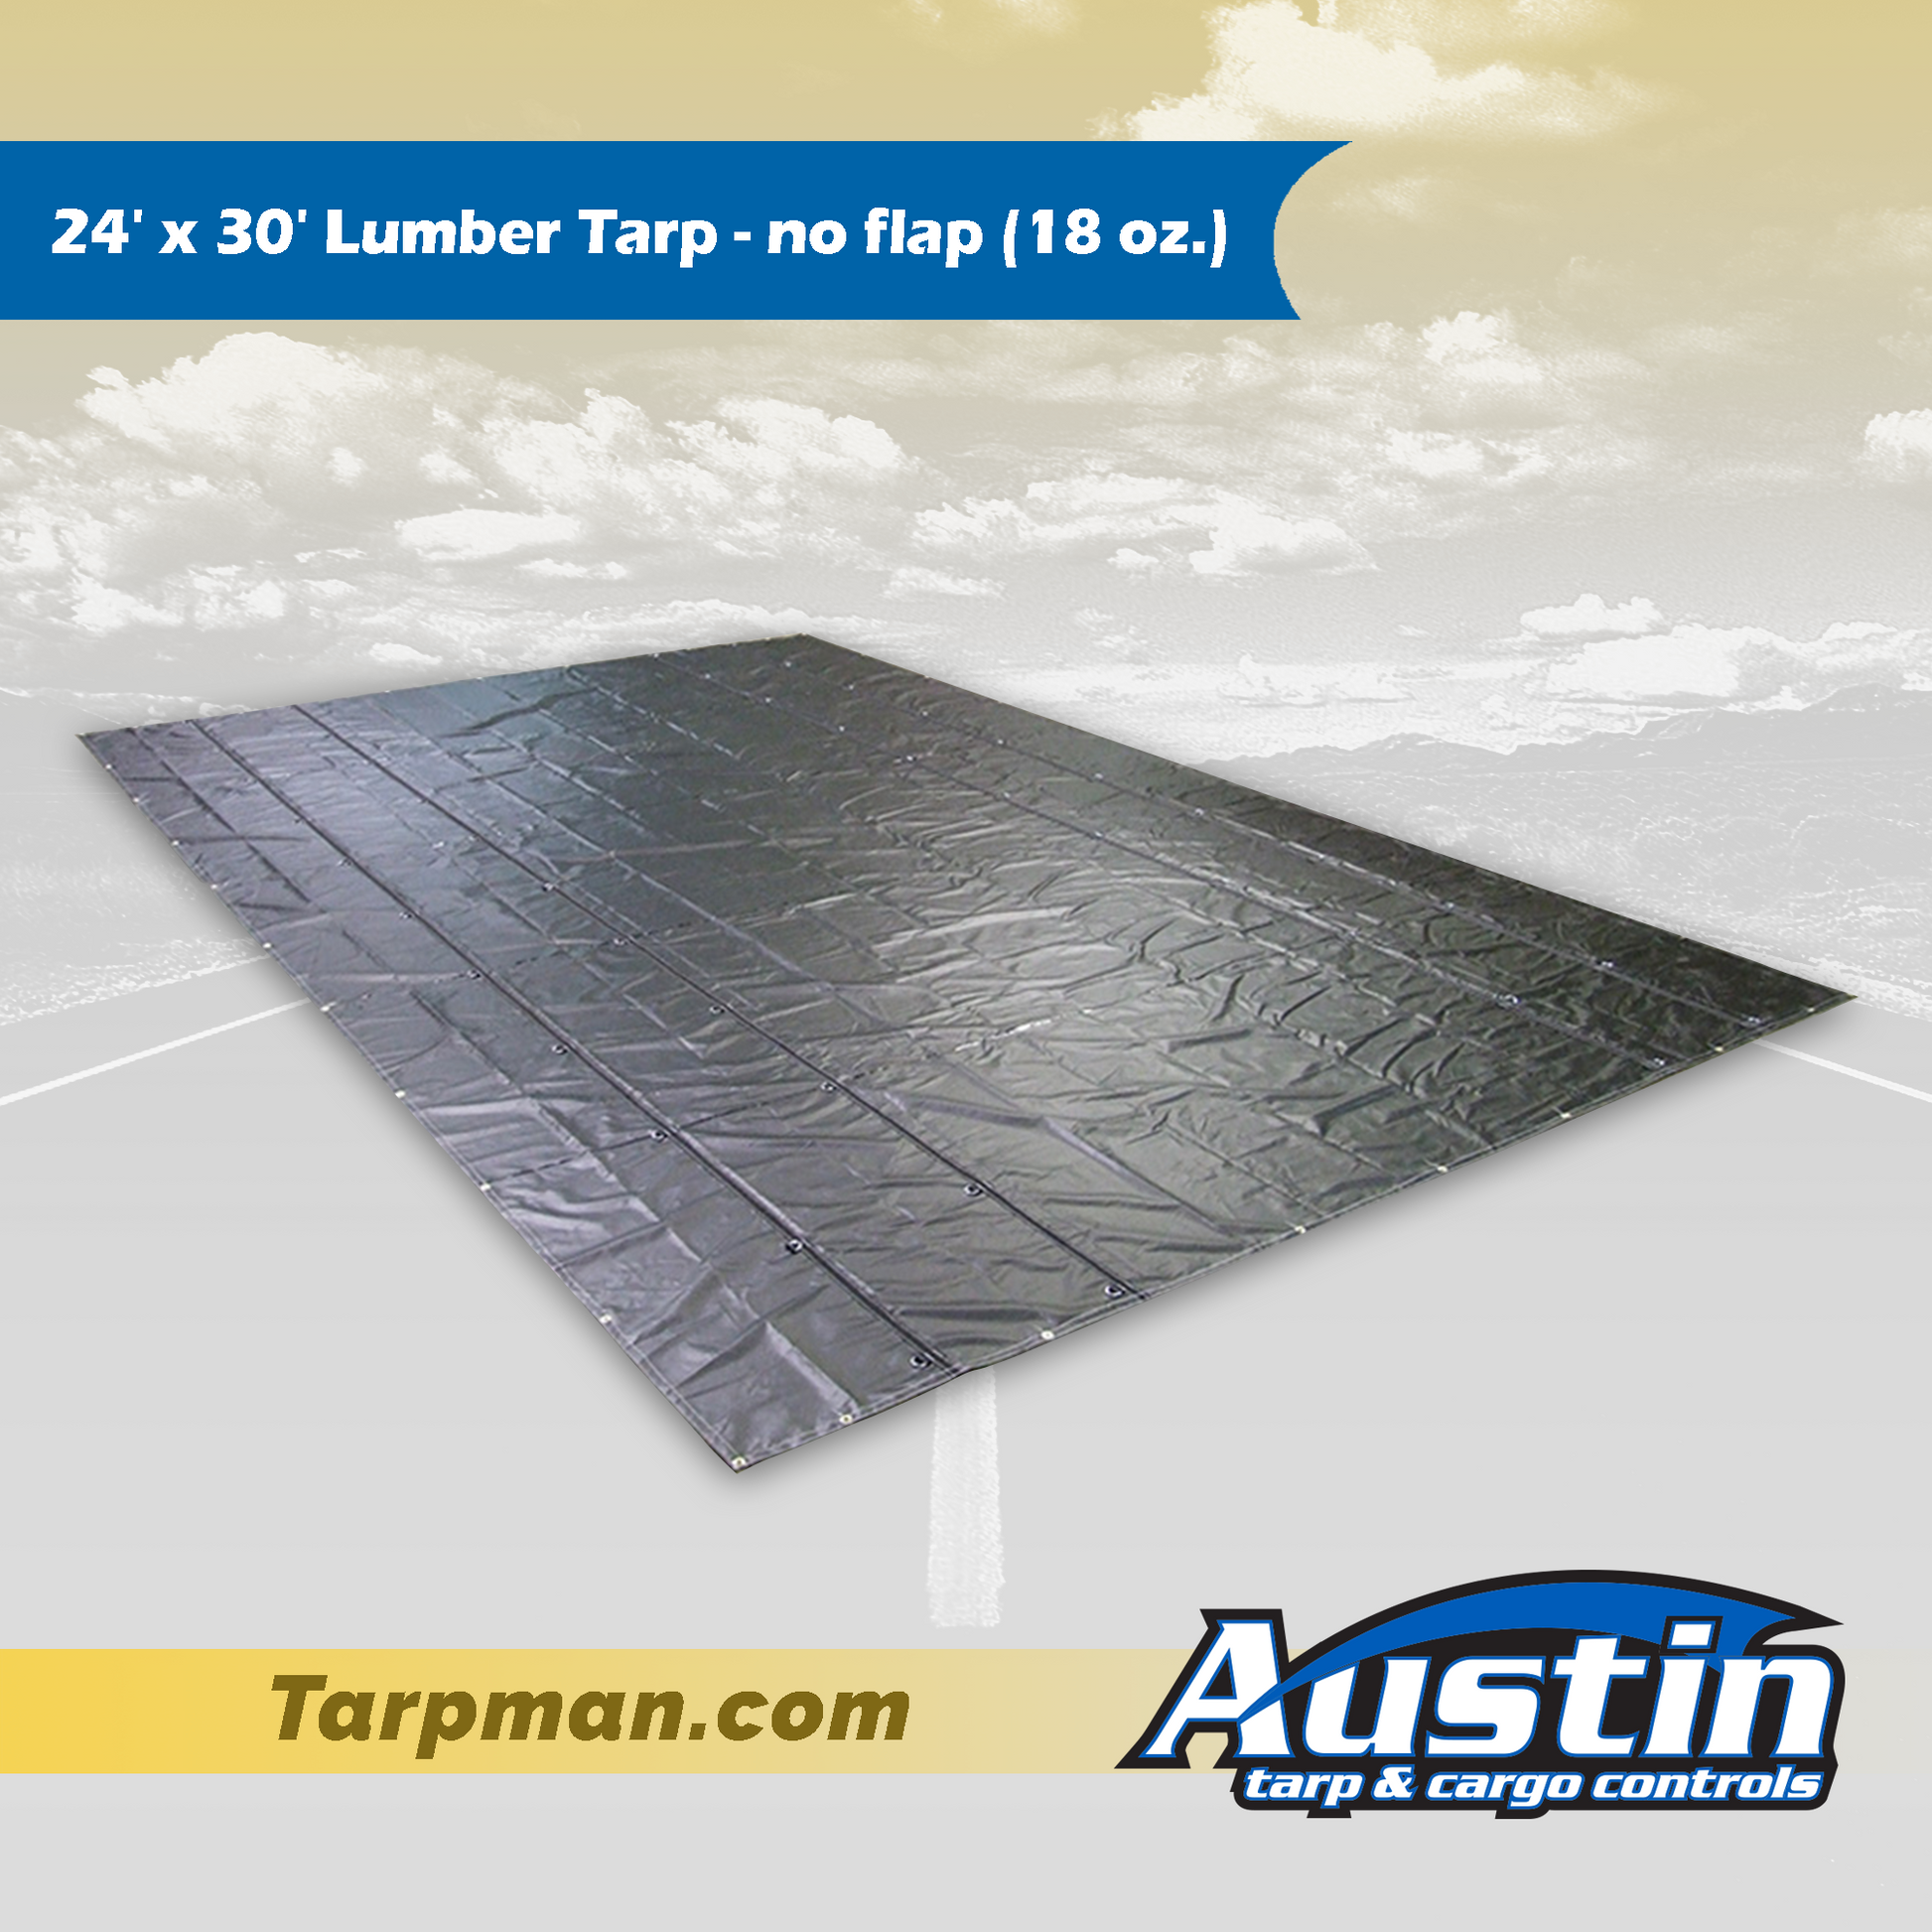 24' x 30' Lumber Tarp - no flap (18 oz.) Tarpman.com | Austin Tarp & Cargo Controls